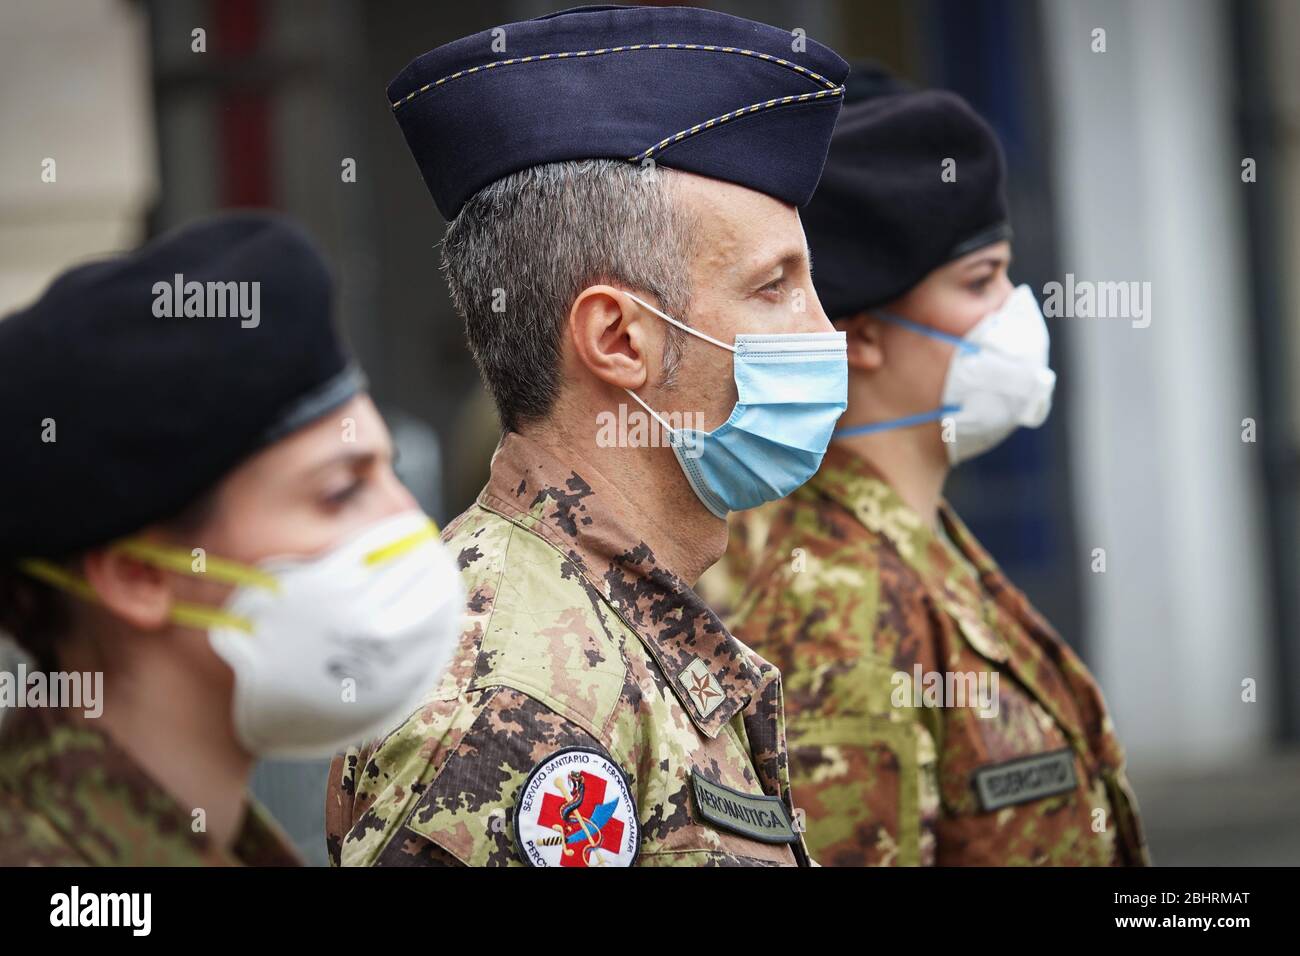 De nouvelles infirmières militaires seront employées dans les maisons de soins pour aider le système de santé régional à faire face à l'urgence du coronavirus. Turin, Italie - avril 2020 Banque D'Images